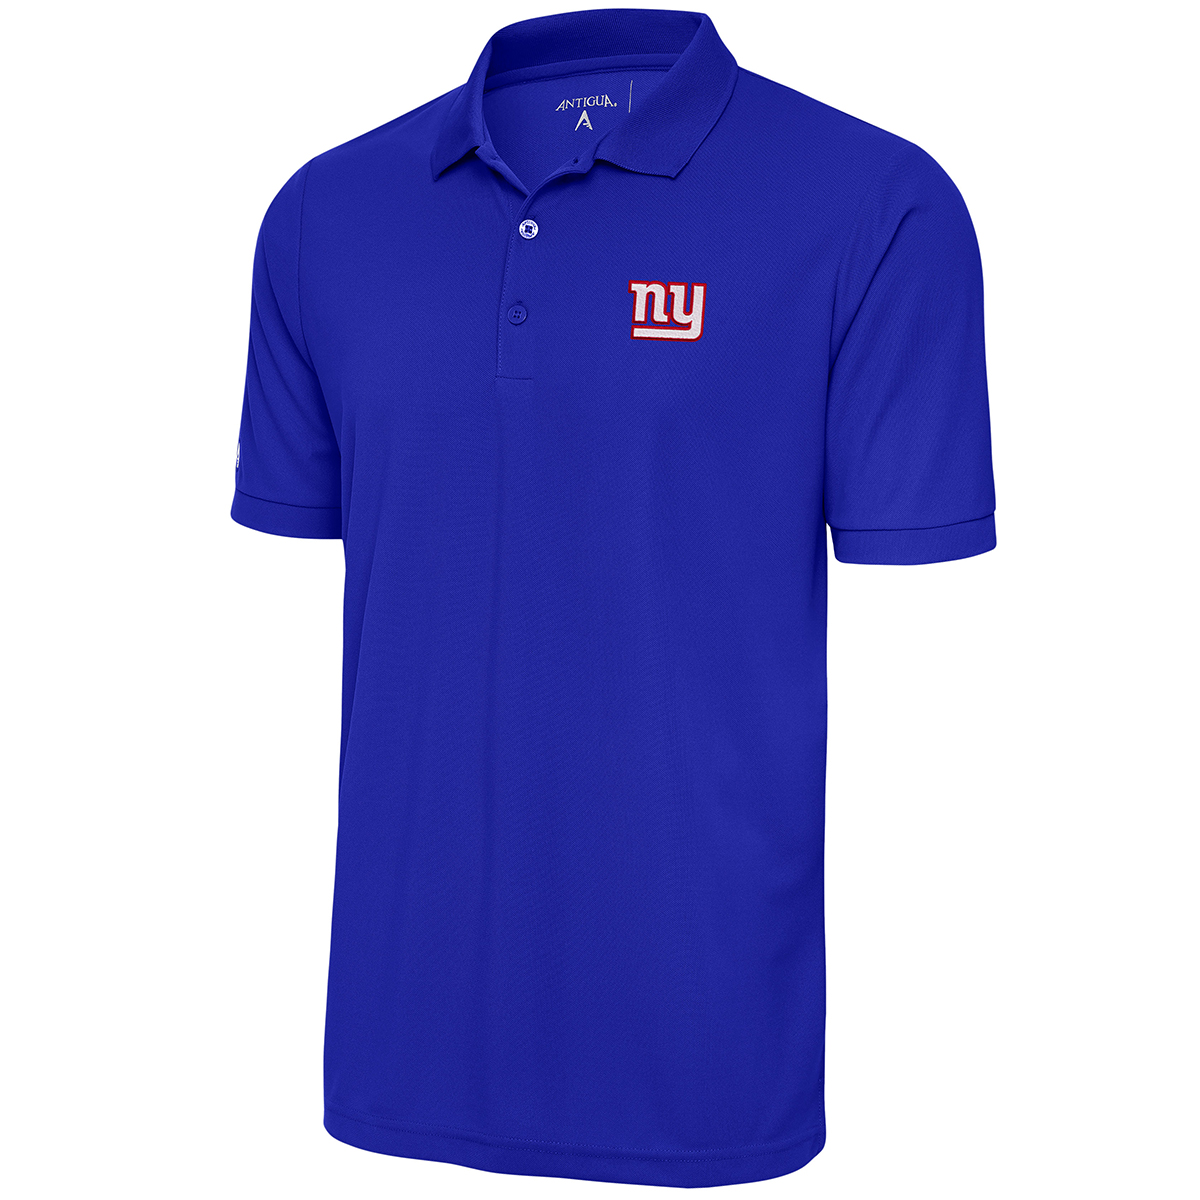 New York Giants Men's Antigua Legacy Short-Sleeve Pique Polo, Blue